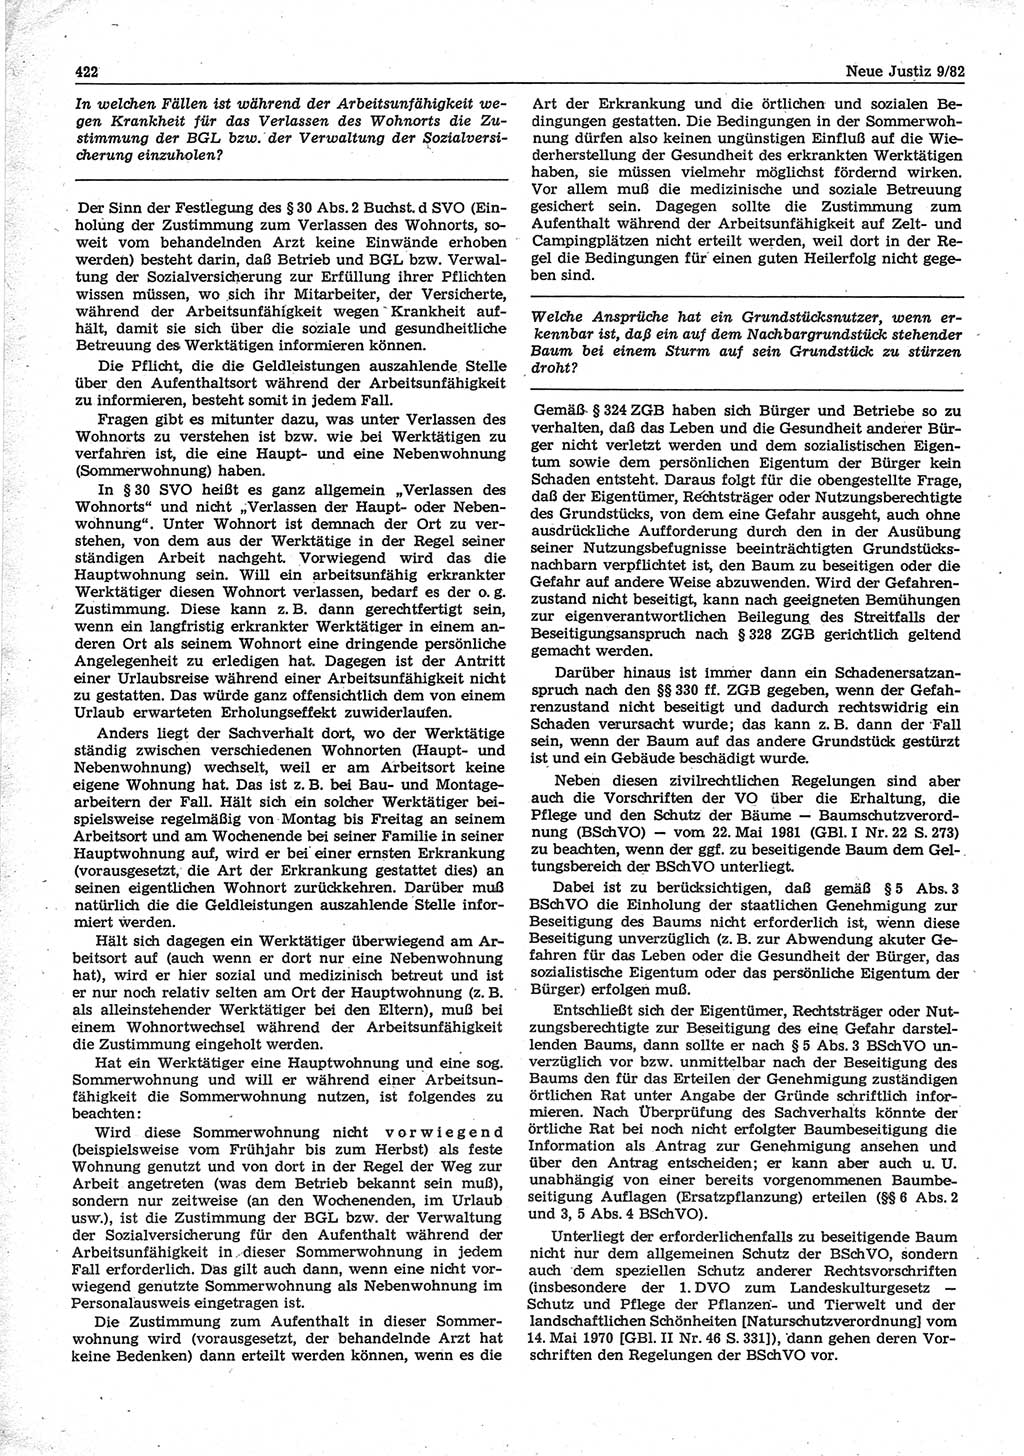 Neue Justiz (NJ), Zeitschrift für sozialistisches Recht und Gesetzlichkeit [Deutsche Demokratische Republik (DDR)], 36. Jahrgang 1982, Seite 422 (NJ DDR 1982, S. 422)